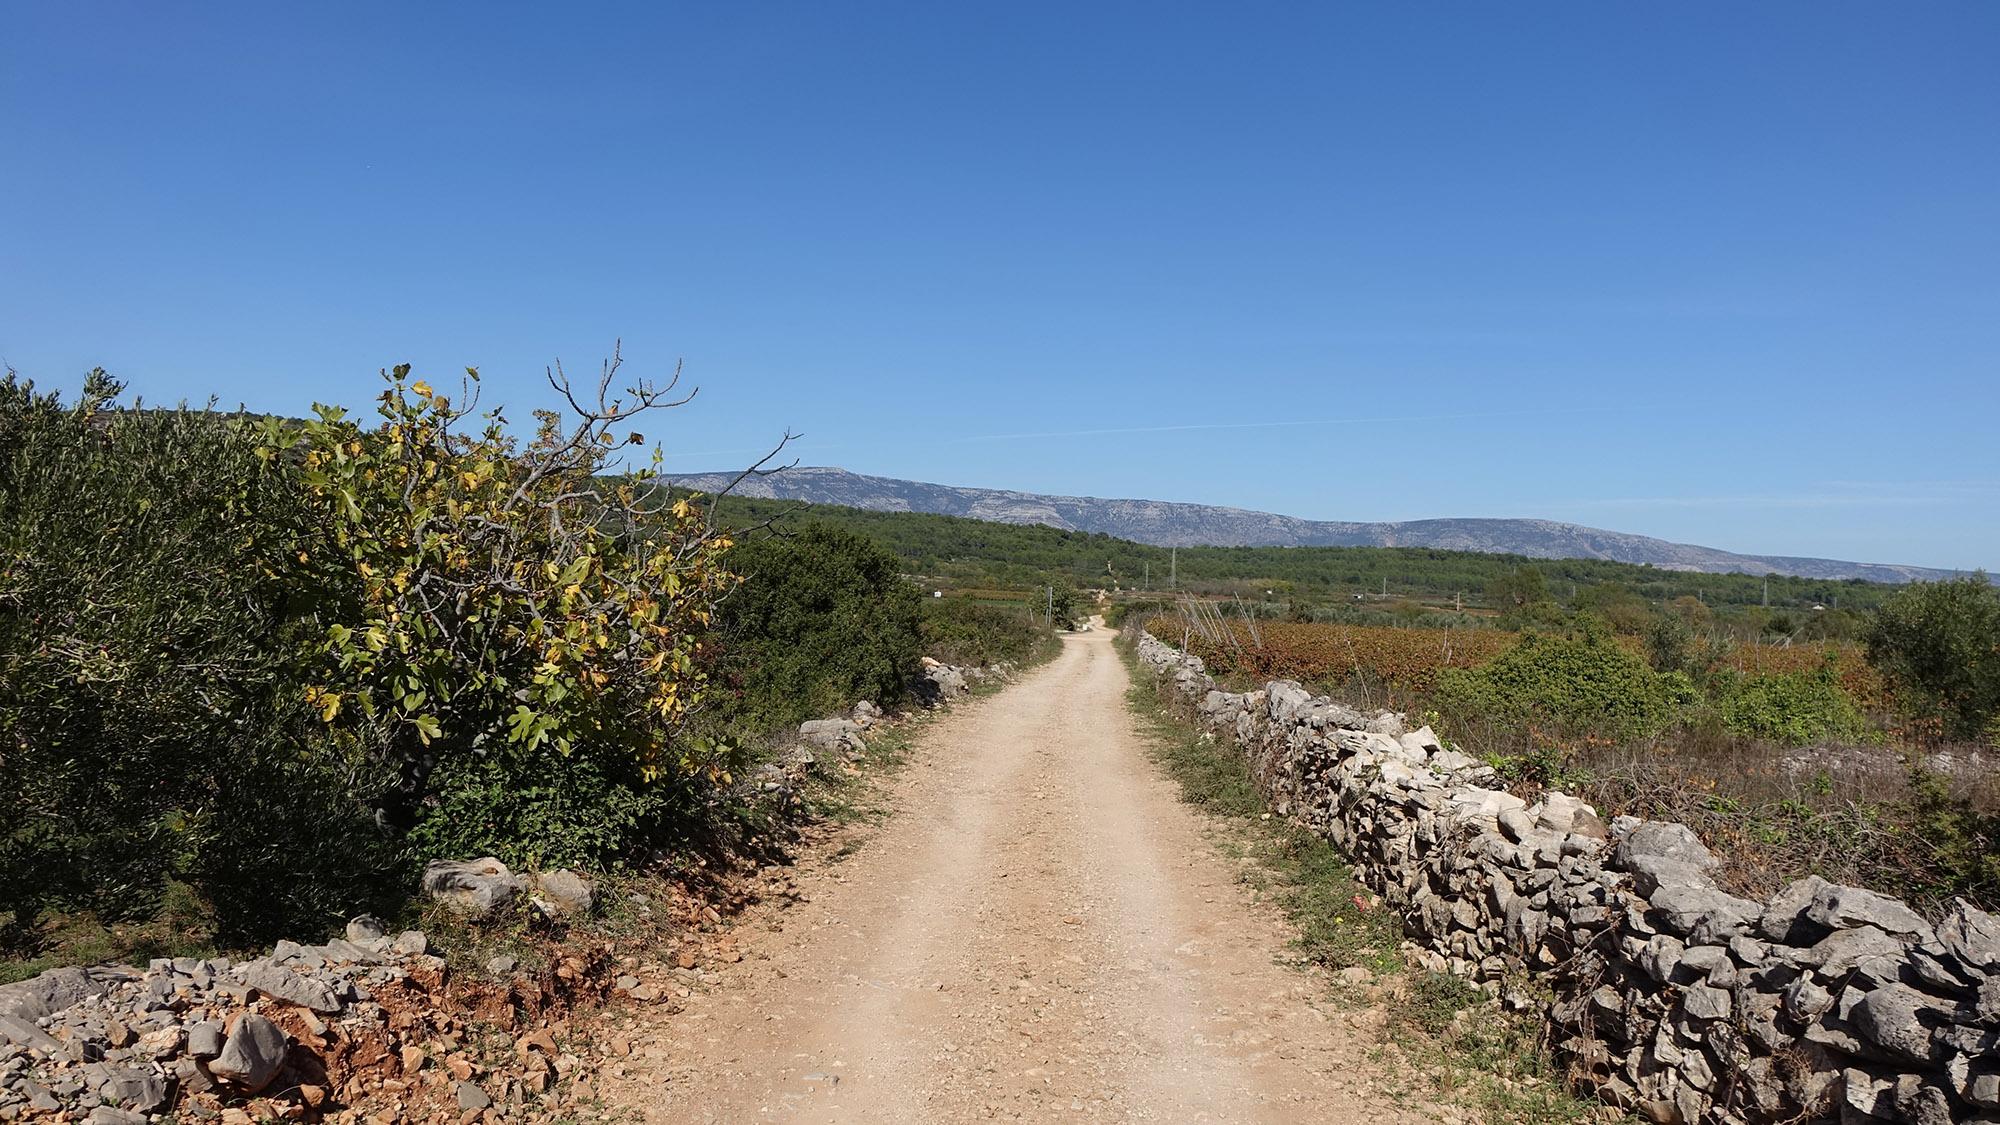 La plaine de Stari Grad a été divisée par des murs de pierre en parcelles de terres agricoles il y a plus de deux millénaires. – © Stari Grad Plain